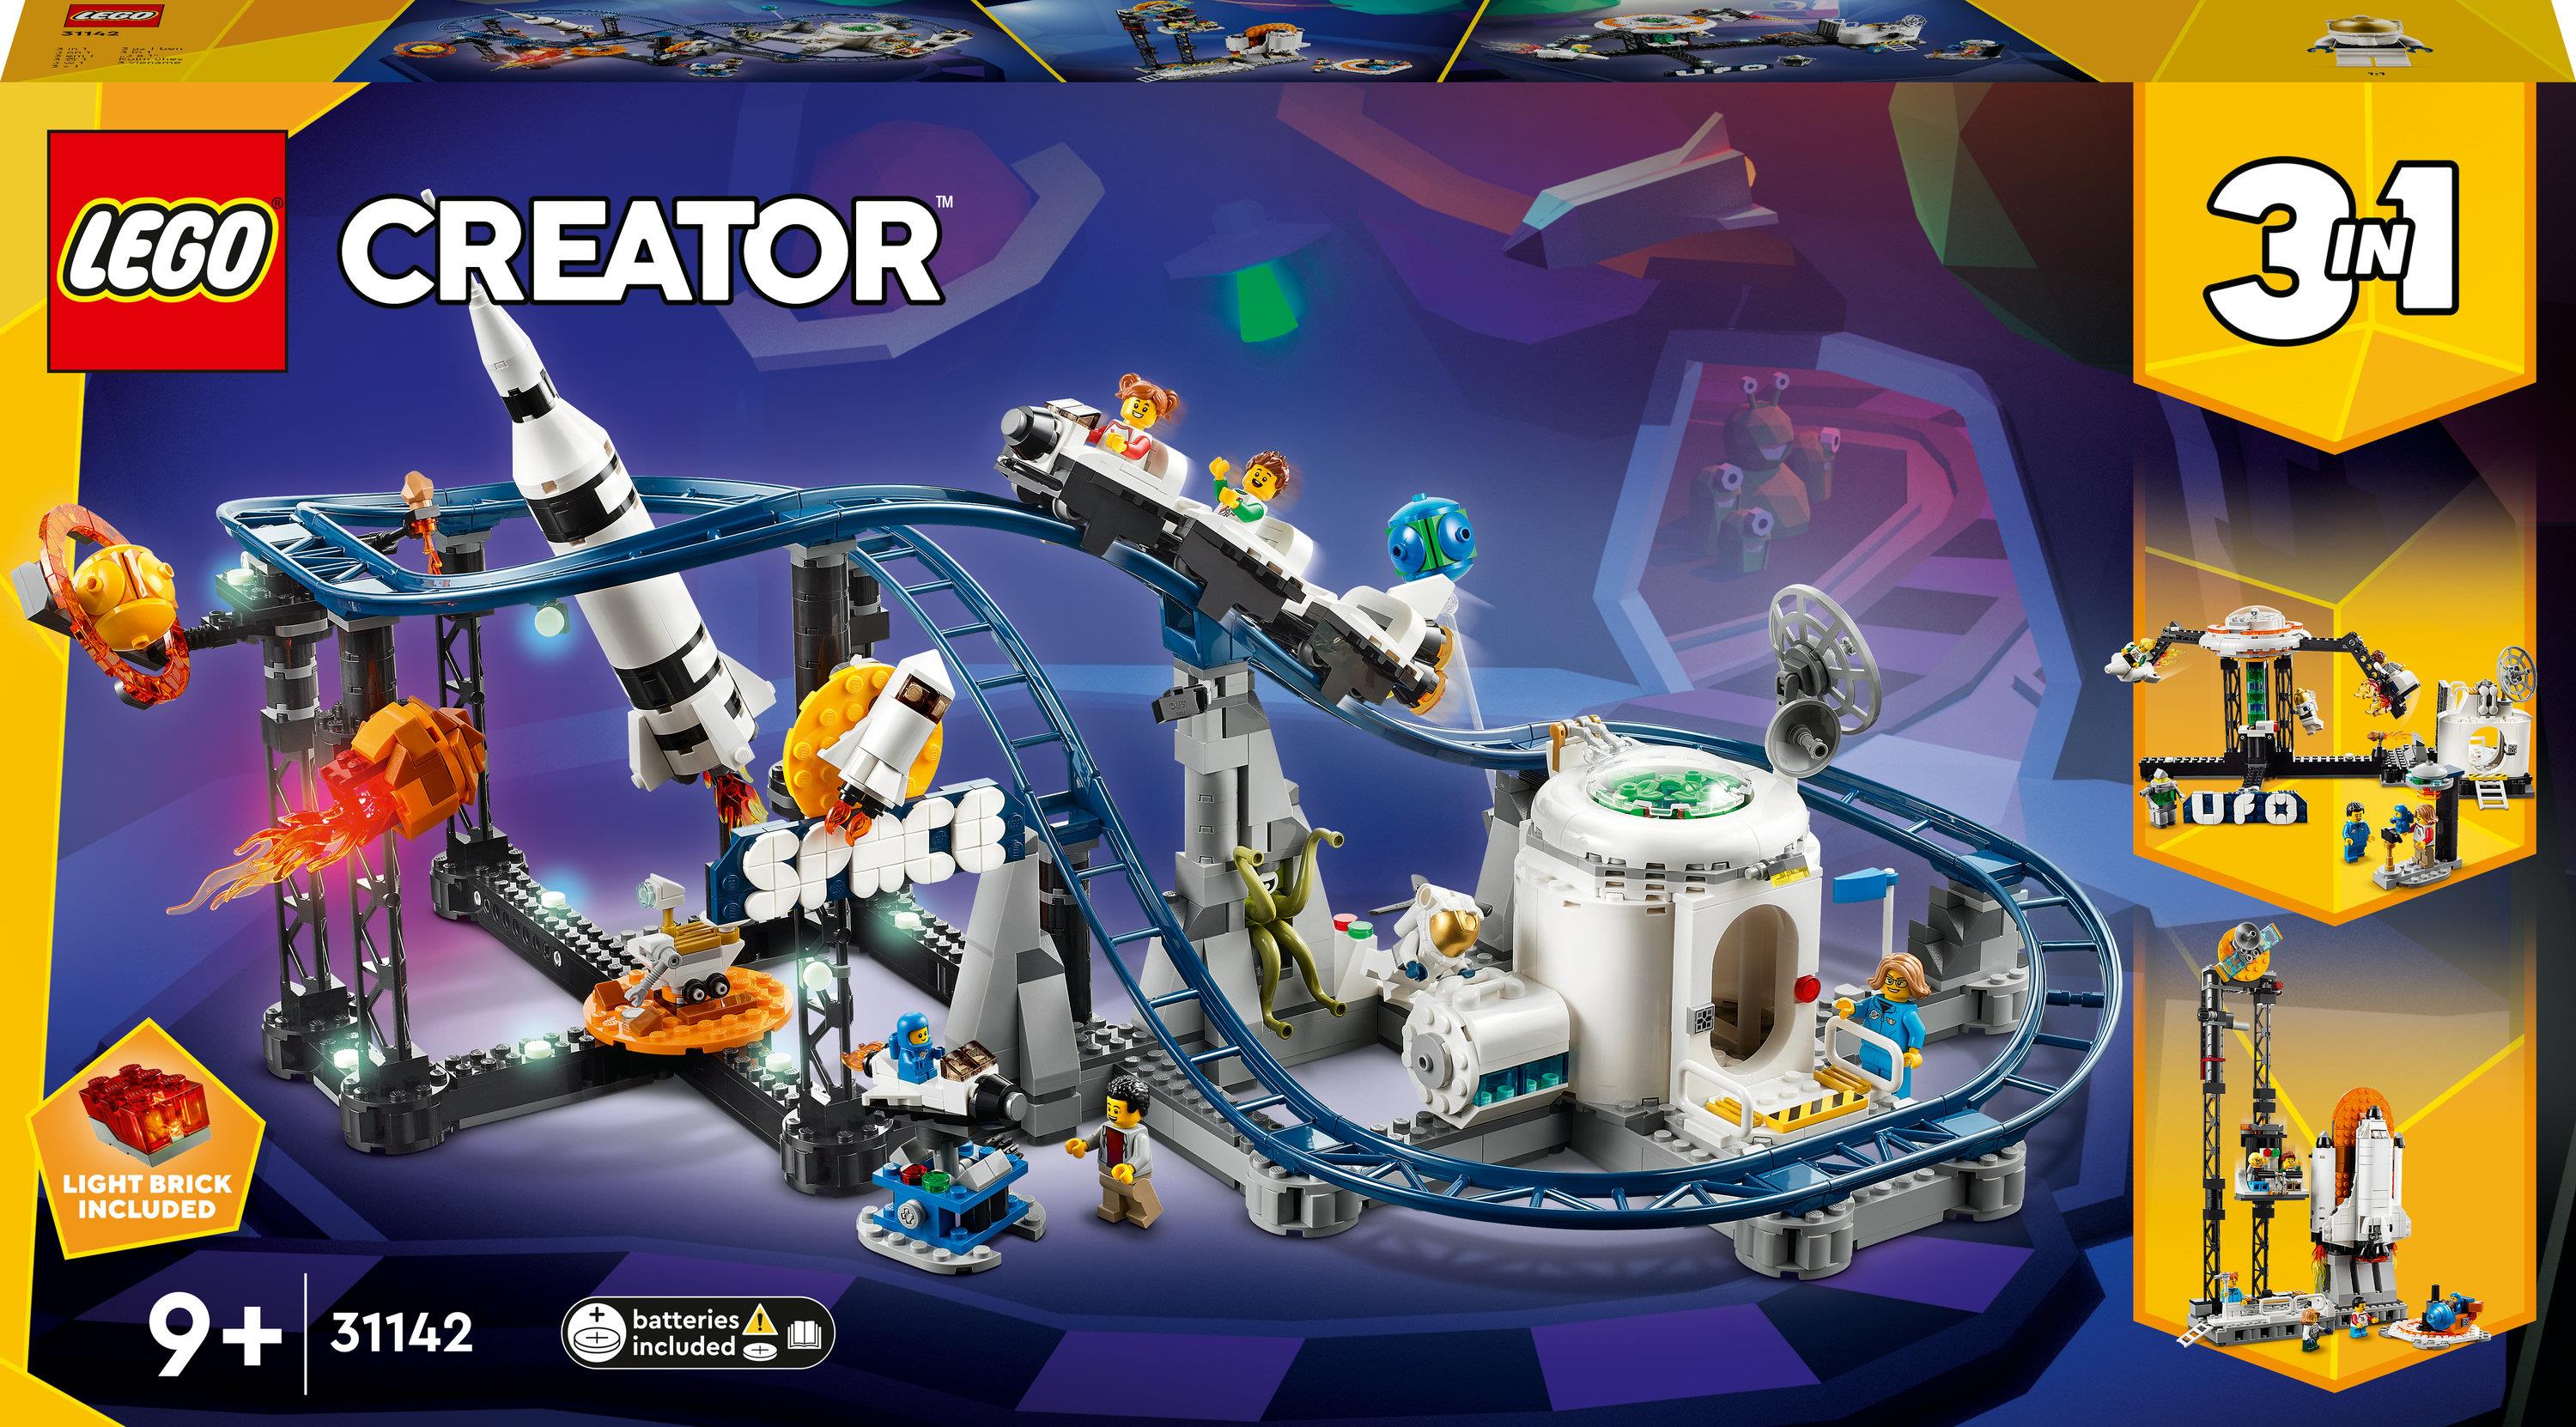 LEGO Creator 3in1 31142